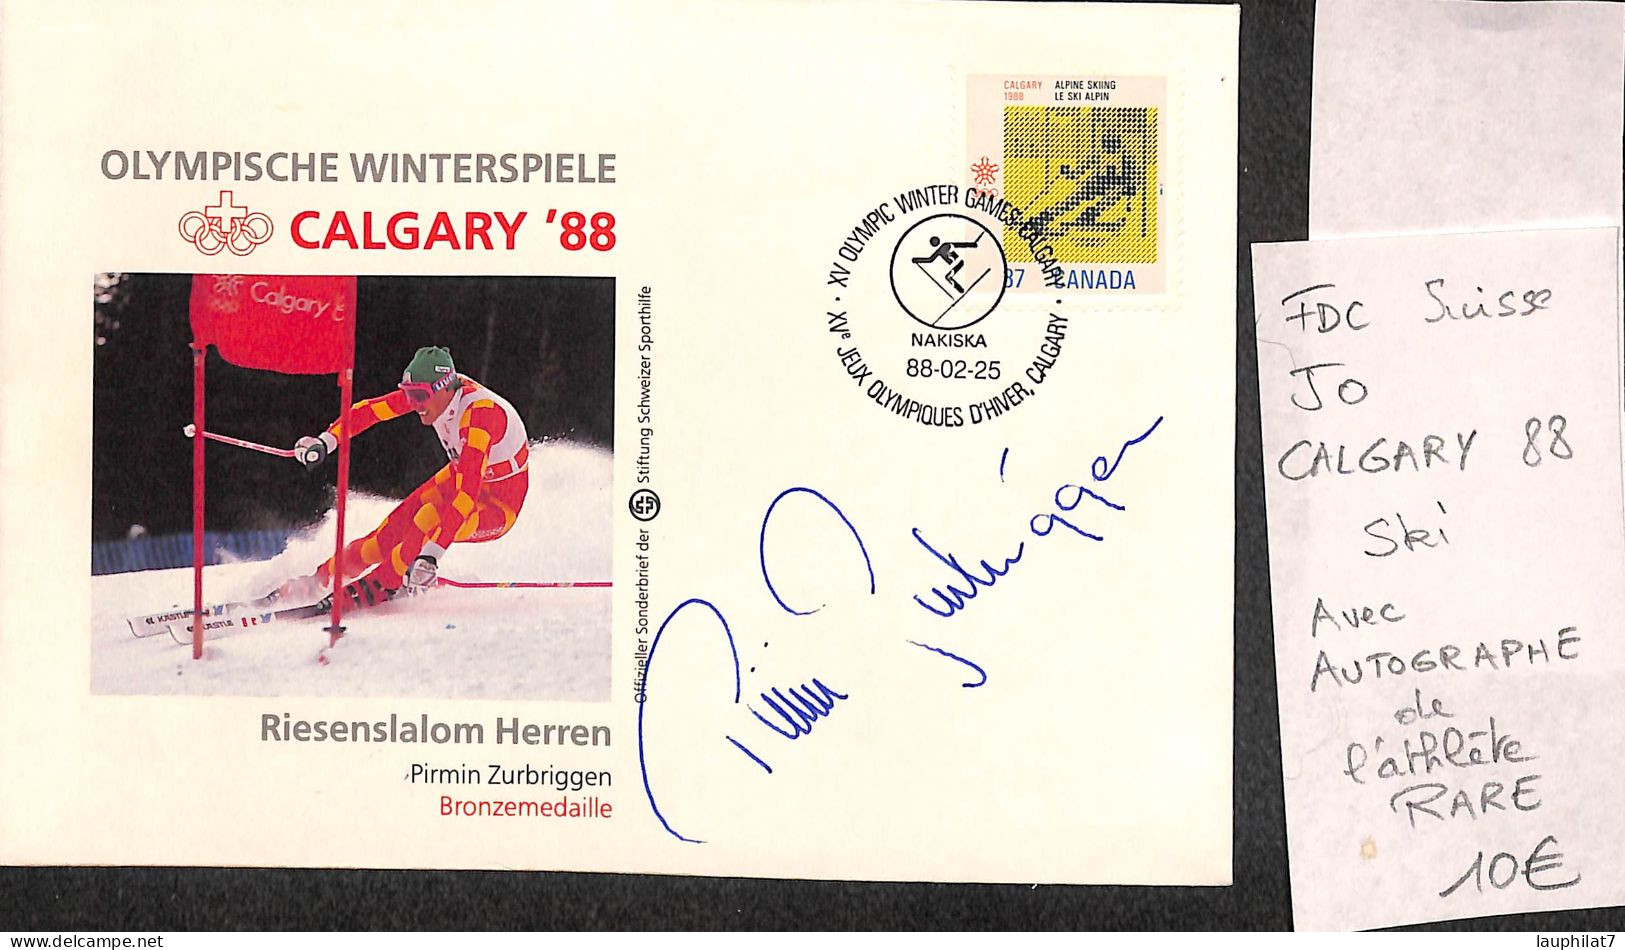 [900095]TB//-Suisse 1988 - FDC, Documents, Pirmin Zurbriggen, Calgary, Avec Autographe De L'athlète, RARE, Jeux Olympiq - Hiver 1988: Calgary